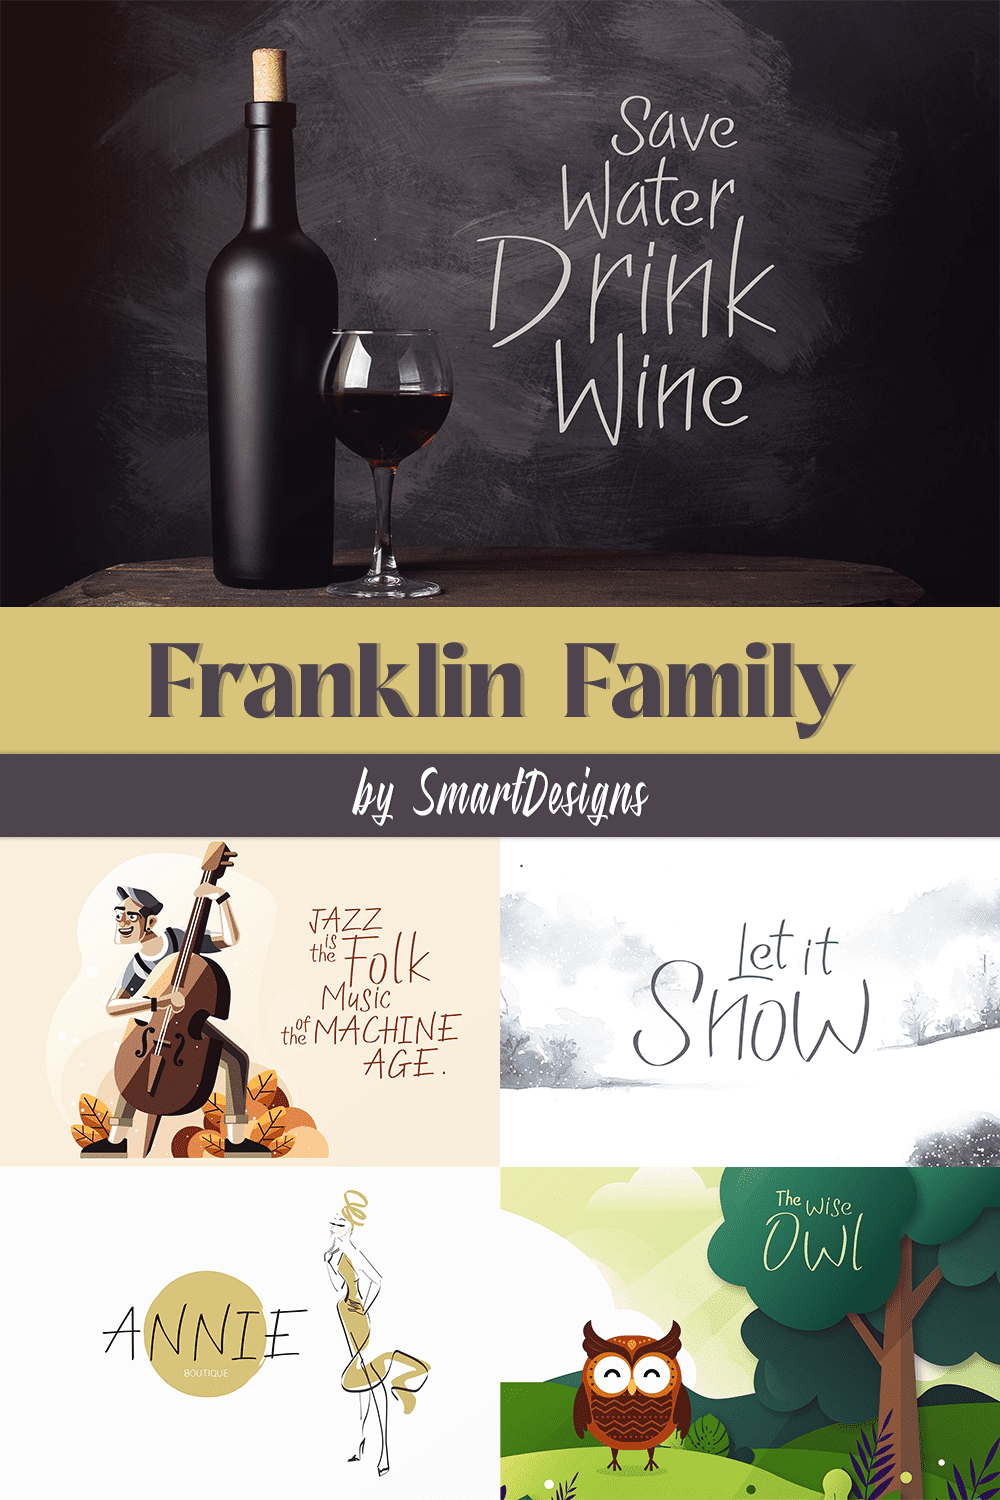 Franklin family of pinterest.